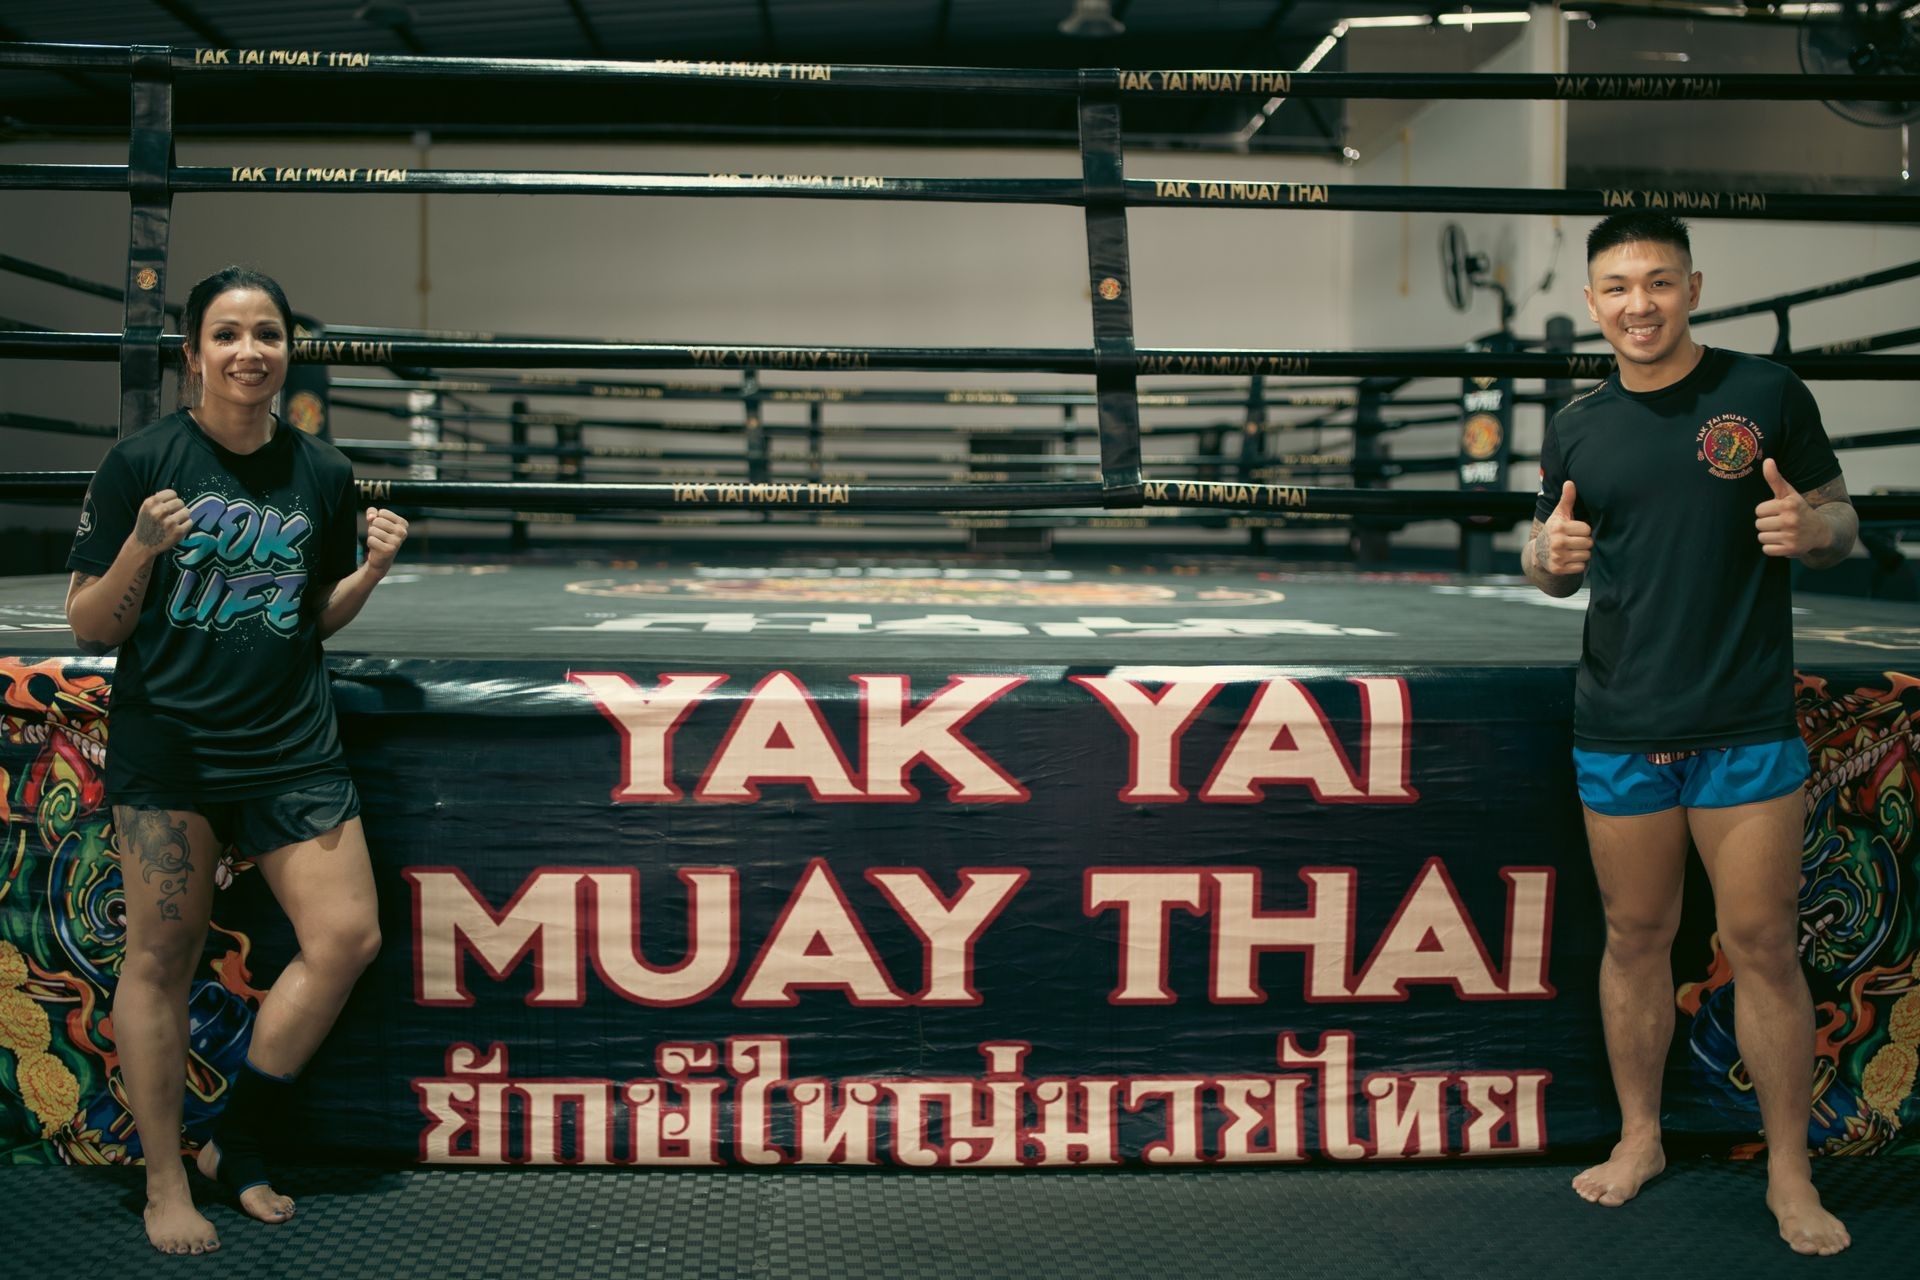 Owners of Yak Yai Muay Thai